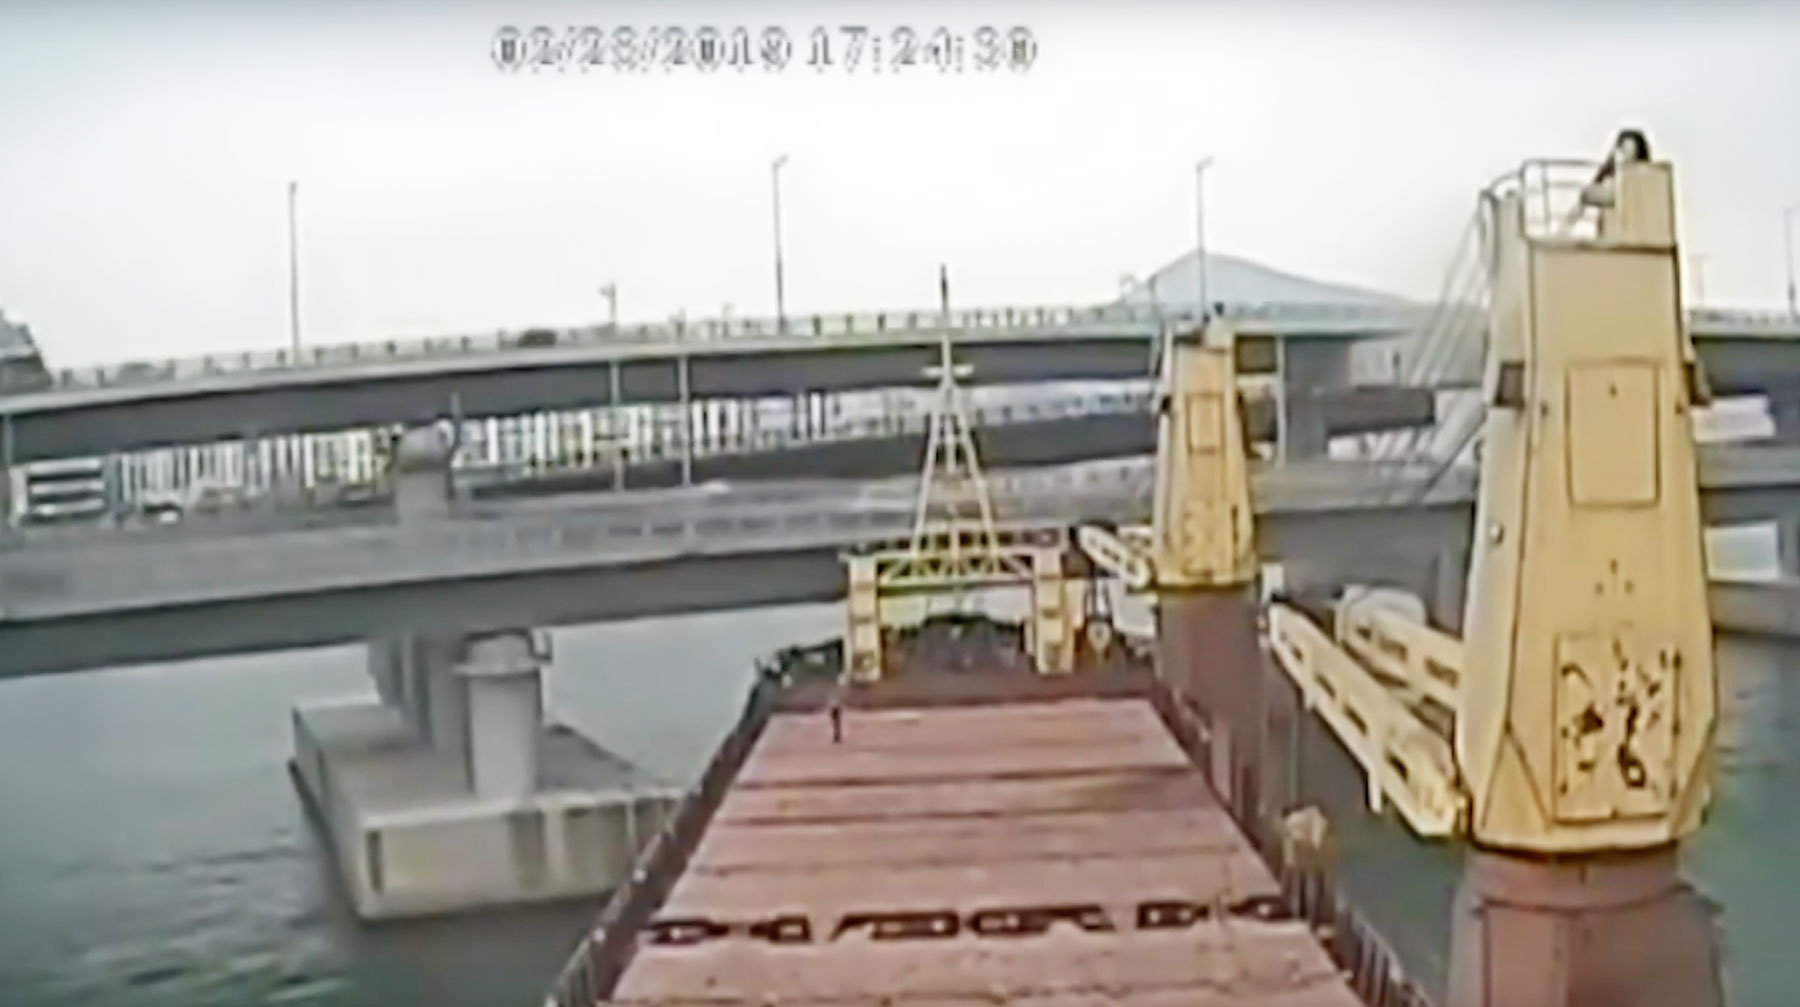 теплоход врезался в мост в ульяновске